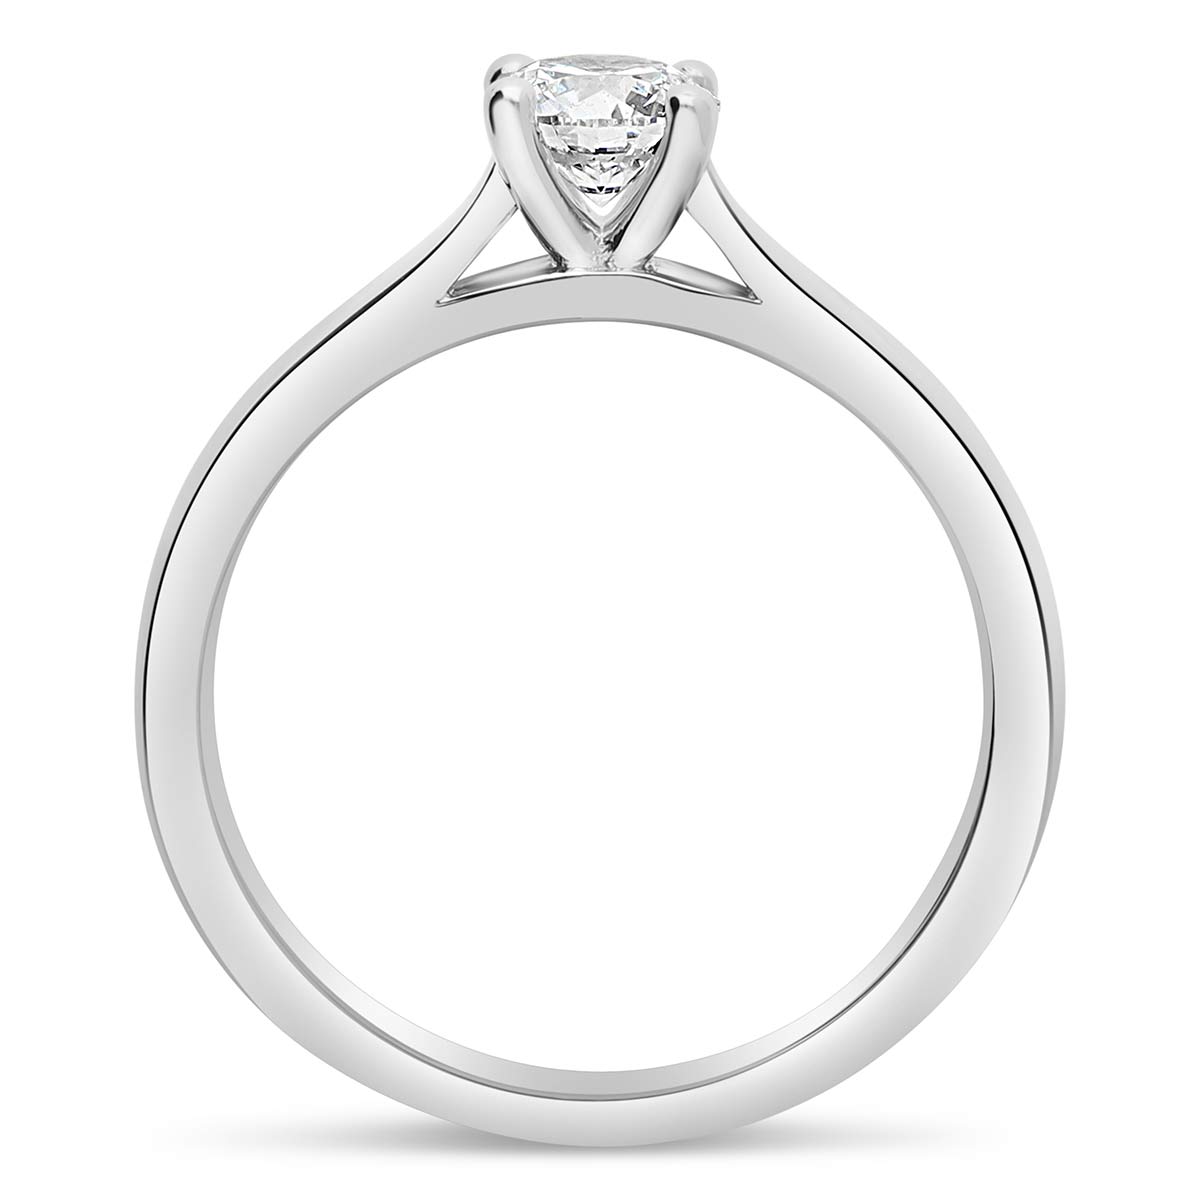 bora-bora-solitaires-diamants-certifies-style-classique-or-blanc-750-